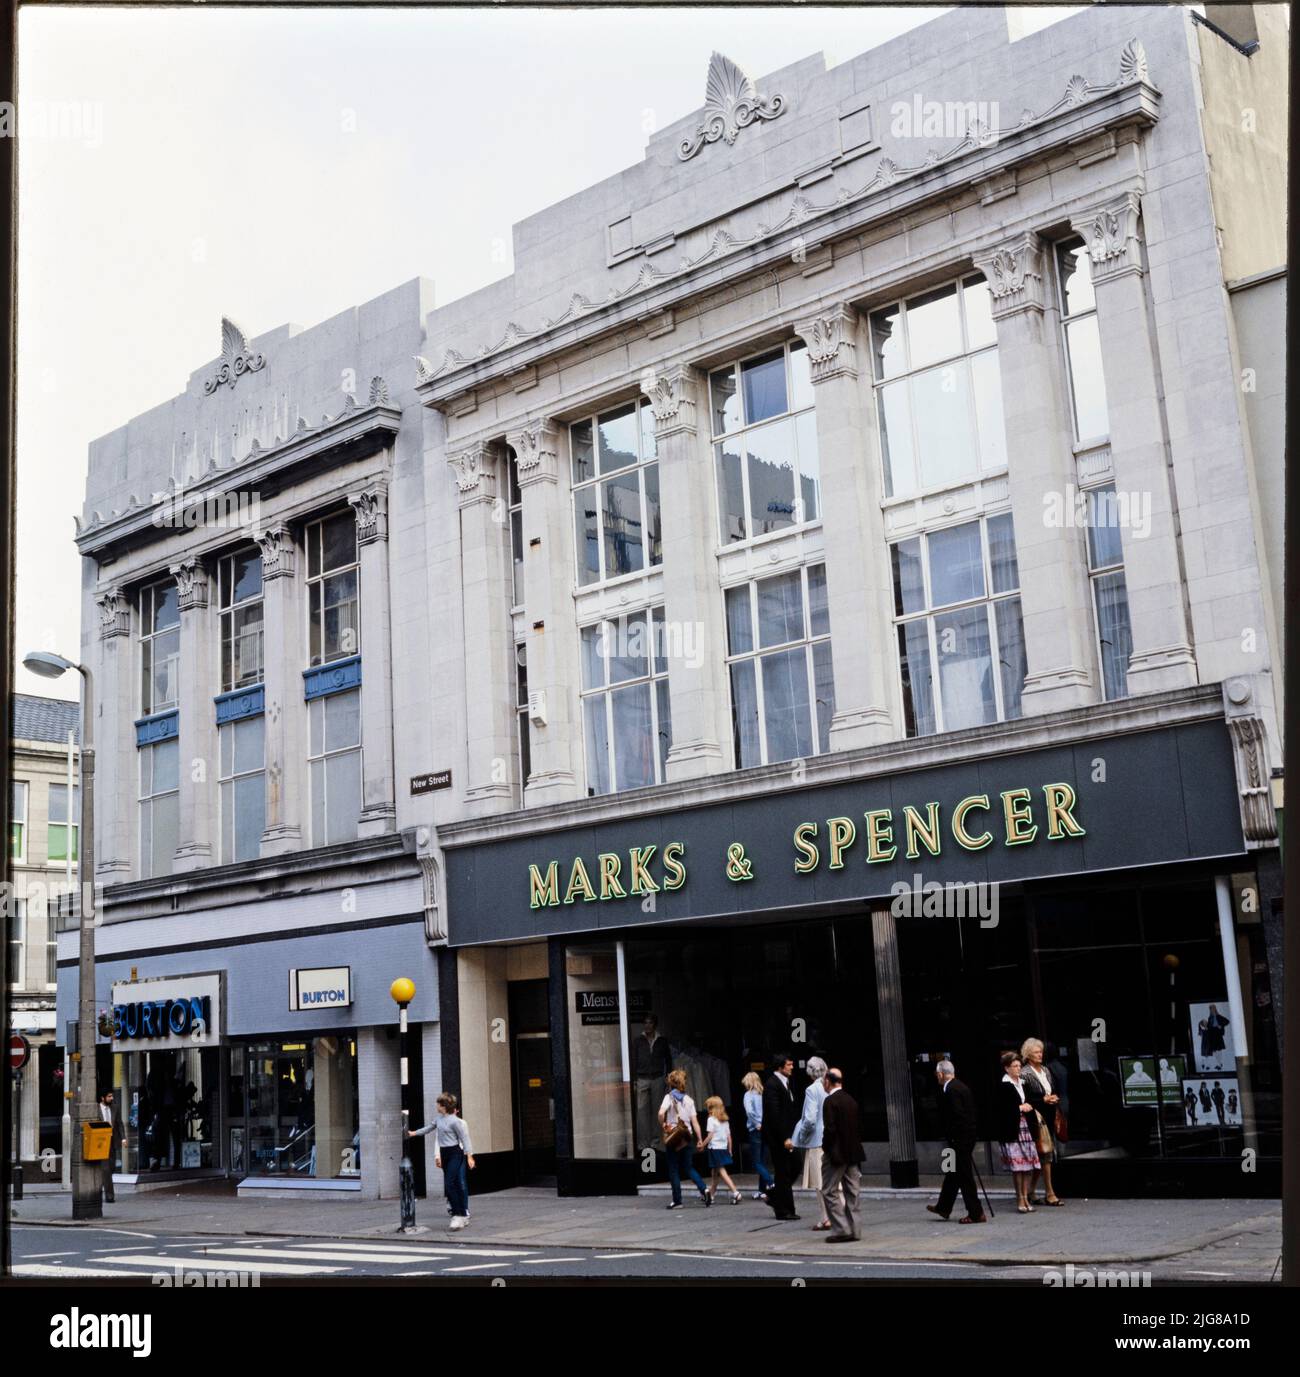 Marks and Spencer, 17-23 New Street, Huddersfield, Kirklees, 1970s-1990s. Les élévations avant des magasins Burton et Marks and Spencer de conception similaire au 17-23 New Street. Marks and Spencer a déménagé d'un site existant à Huddersfield vers l'ancien site de Burton, au 19-23 New Street, en 1934. Burton a fait l'acquisition du site d'angle, situé au 17 New Street, et a construit un petit magasin d'un design presque identique. Le magasin Burton avait fermé ses portes en 2008 et les locaux étaient occupés par Vision Express. The Marks and Spencer a fermé ses portes en 2019. Banque D'Images